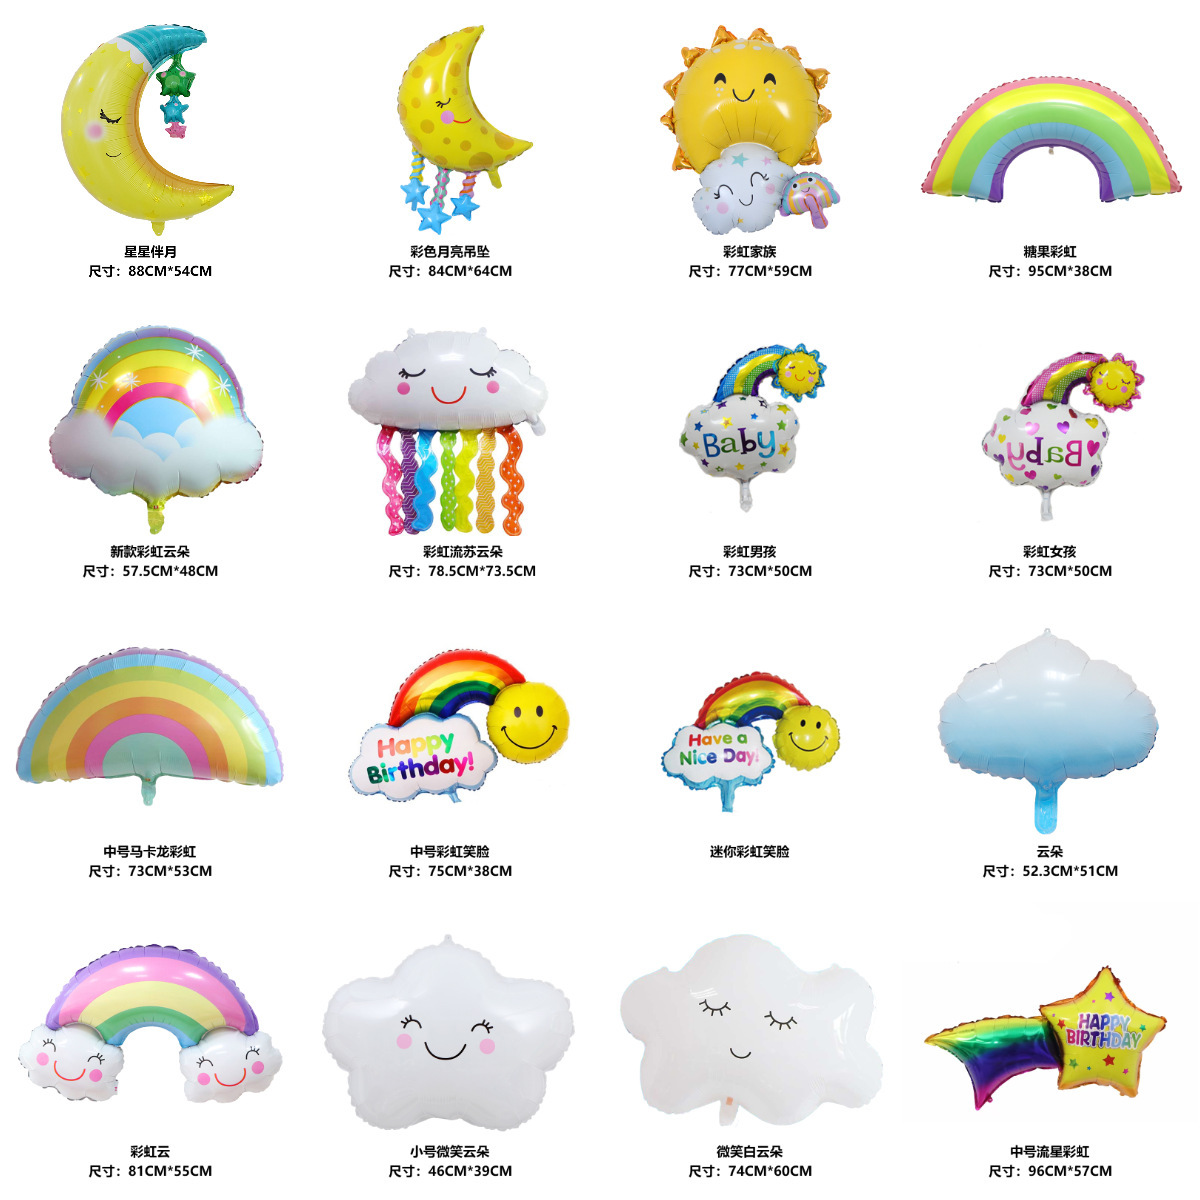 rainbow moon clouds meteor aluminum film balloon birthday party wedding decoration balloon children‘s toys